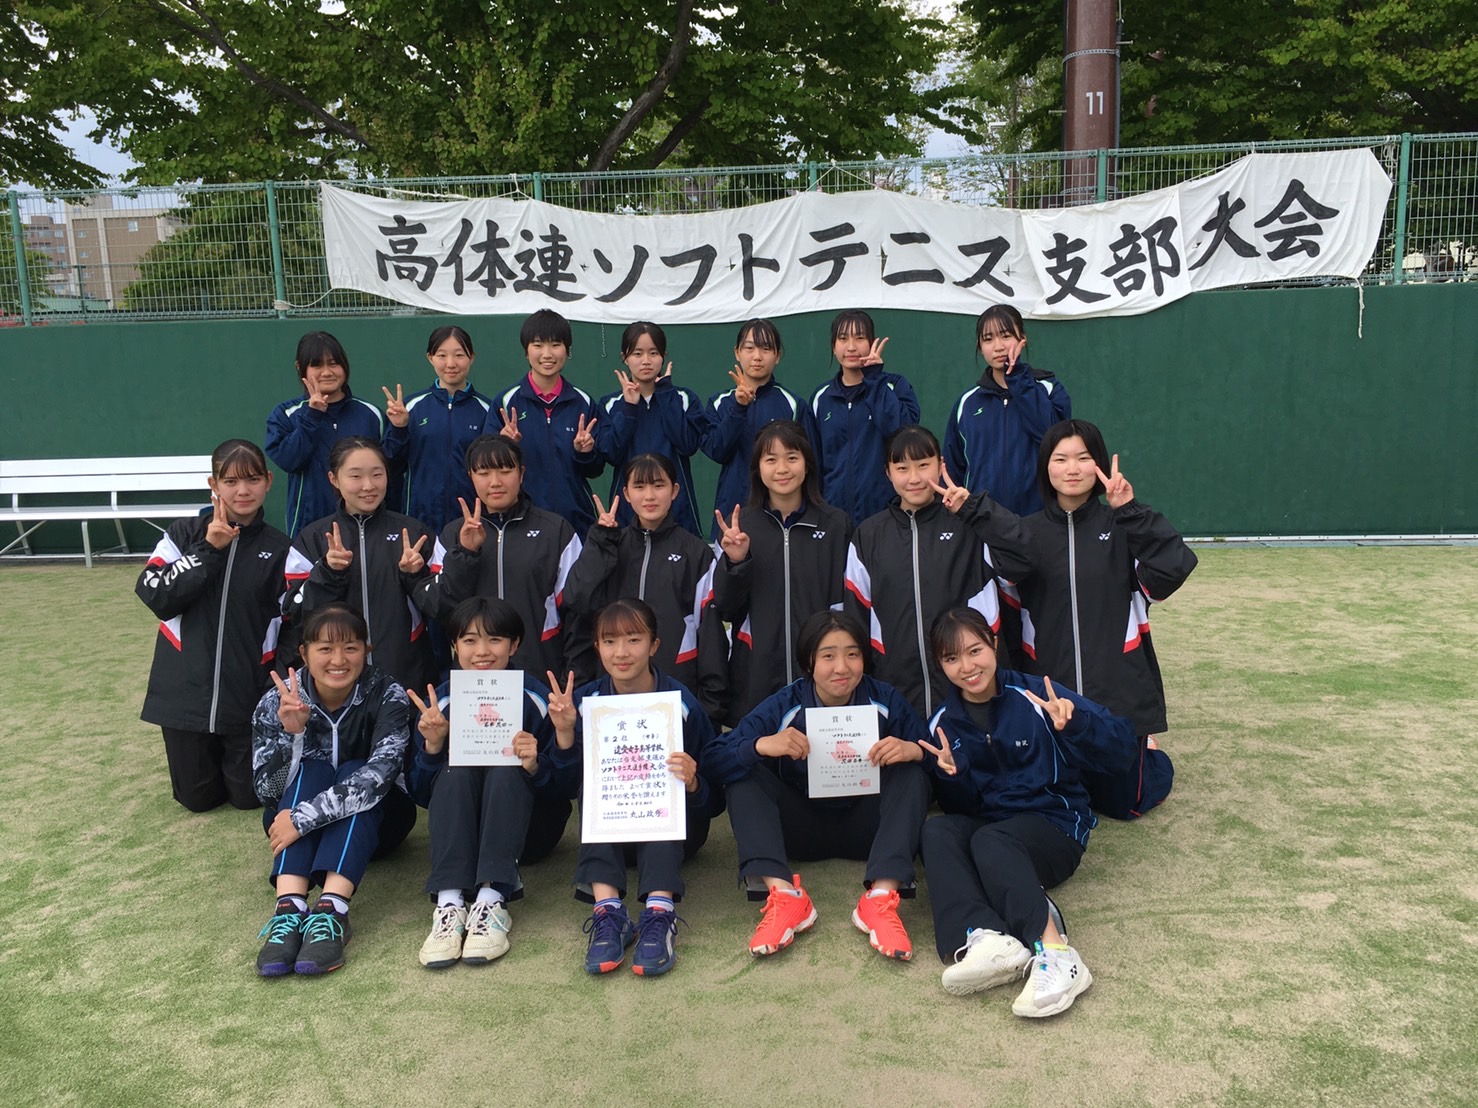 『高体連函館支部ソフトテニス大会』において『団体第2位』となり、北海道大会出場を決めることができました‼️